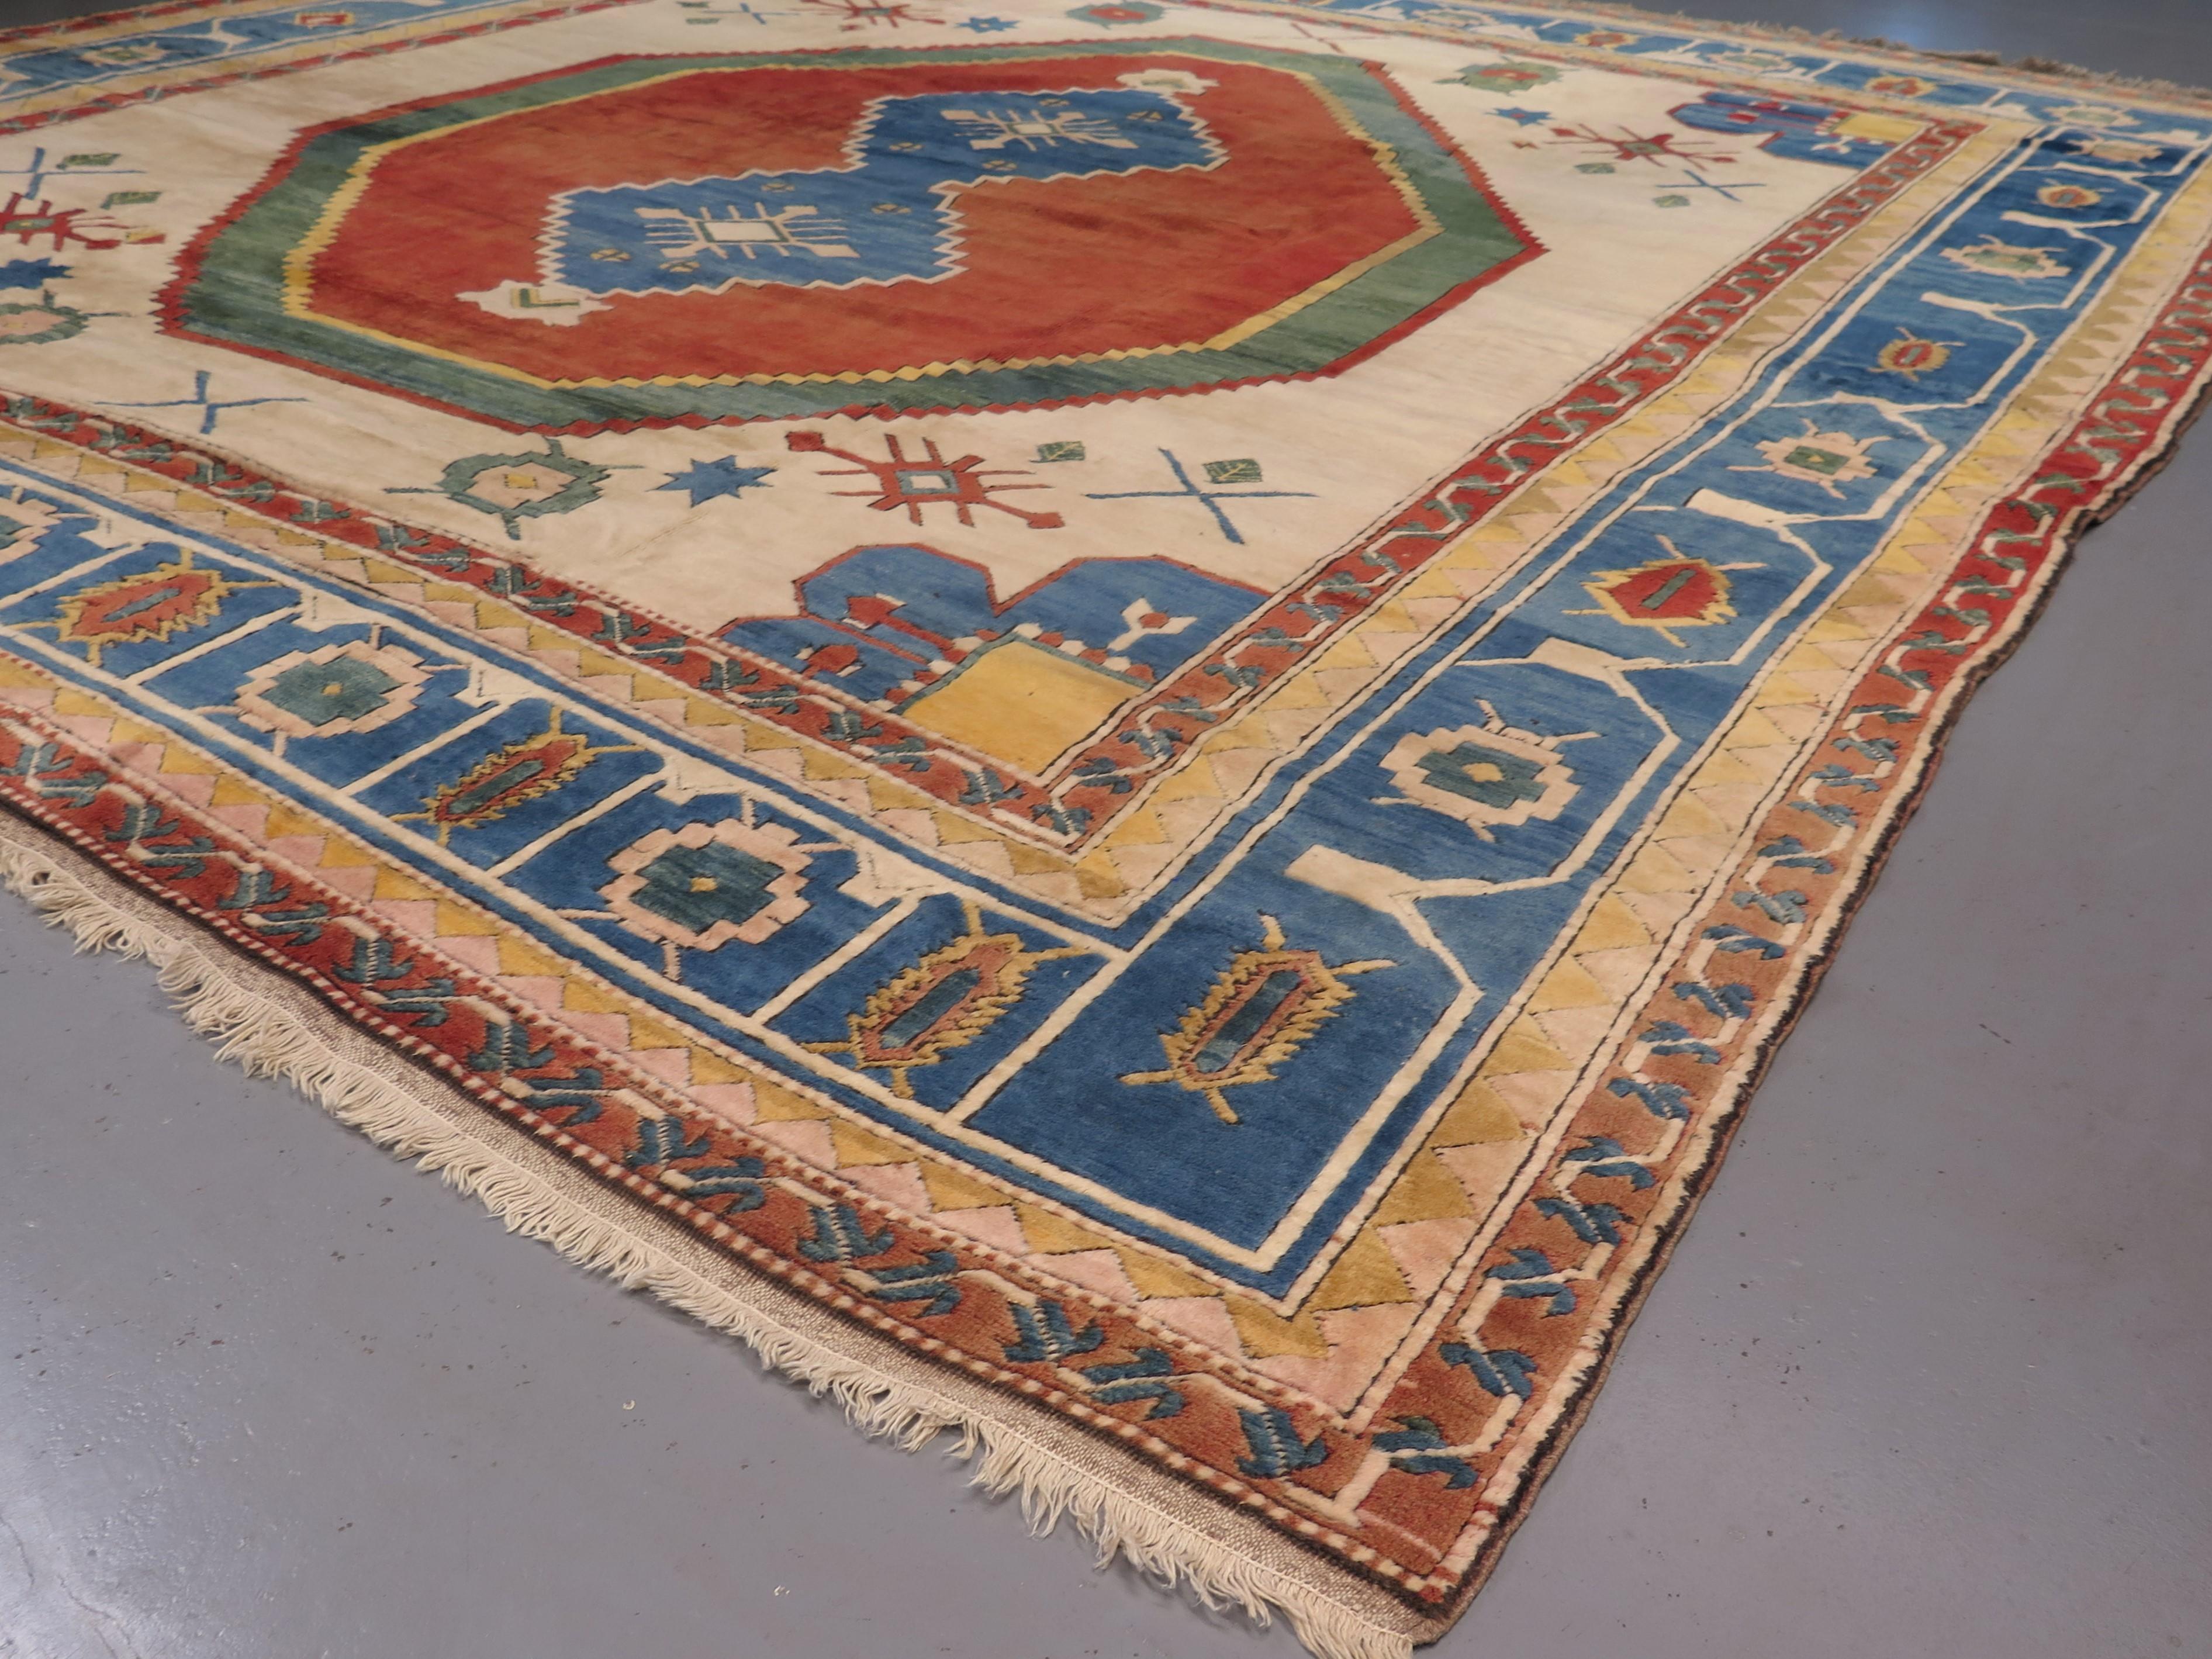 Anatolien, die westliche Region der Türkei, hat eine lange Tradition im Teppichweben, die mindestens bis ins 13. Jahrhundert zurückreicht. Wie der Entdecker Marco Polo einst schrieb: 